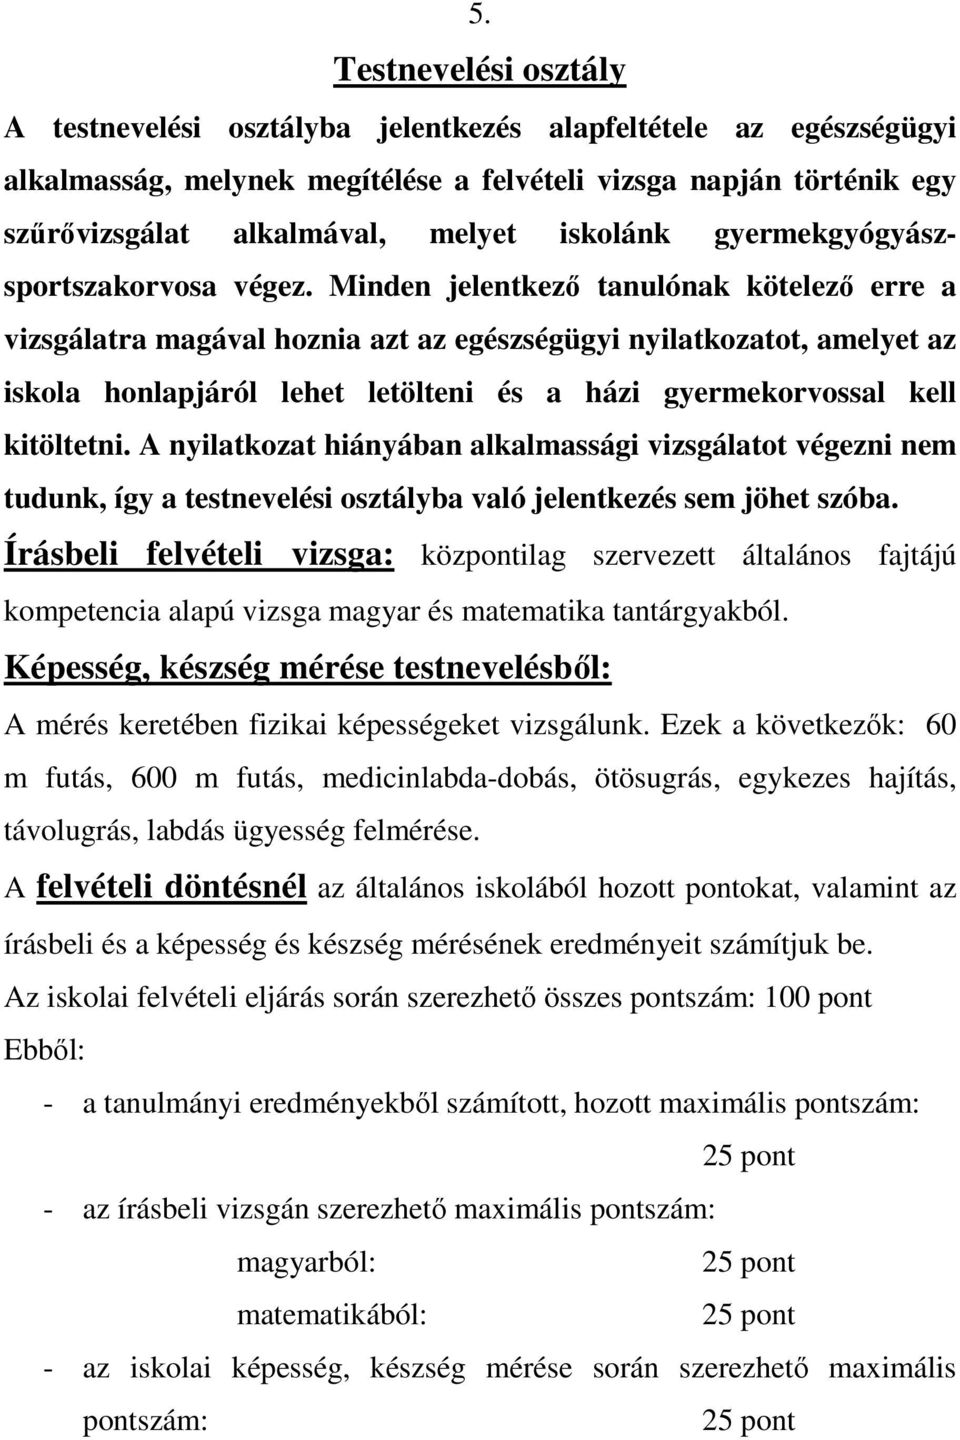 Minden jelentkezı tanulónak kötelezı erre a vizsgálatra magával hoznia azt az egészségügyi nyilatkozatot, amelyet az iskola honlapjáról lehet letölteni és a házi gyermekorvossal kell kitöltetni.